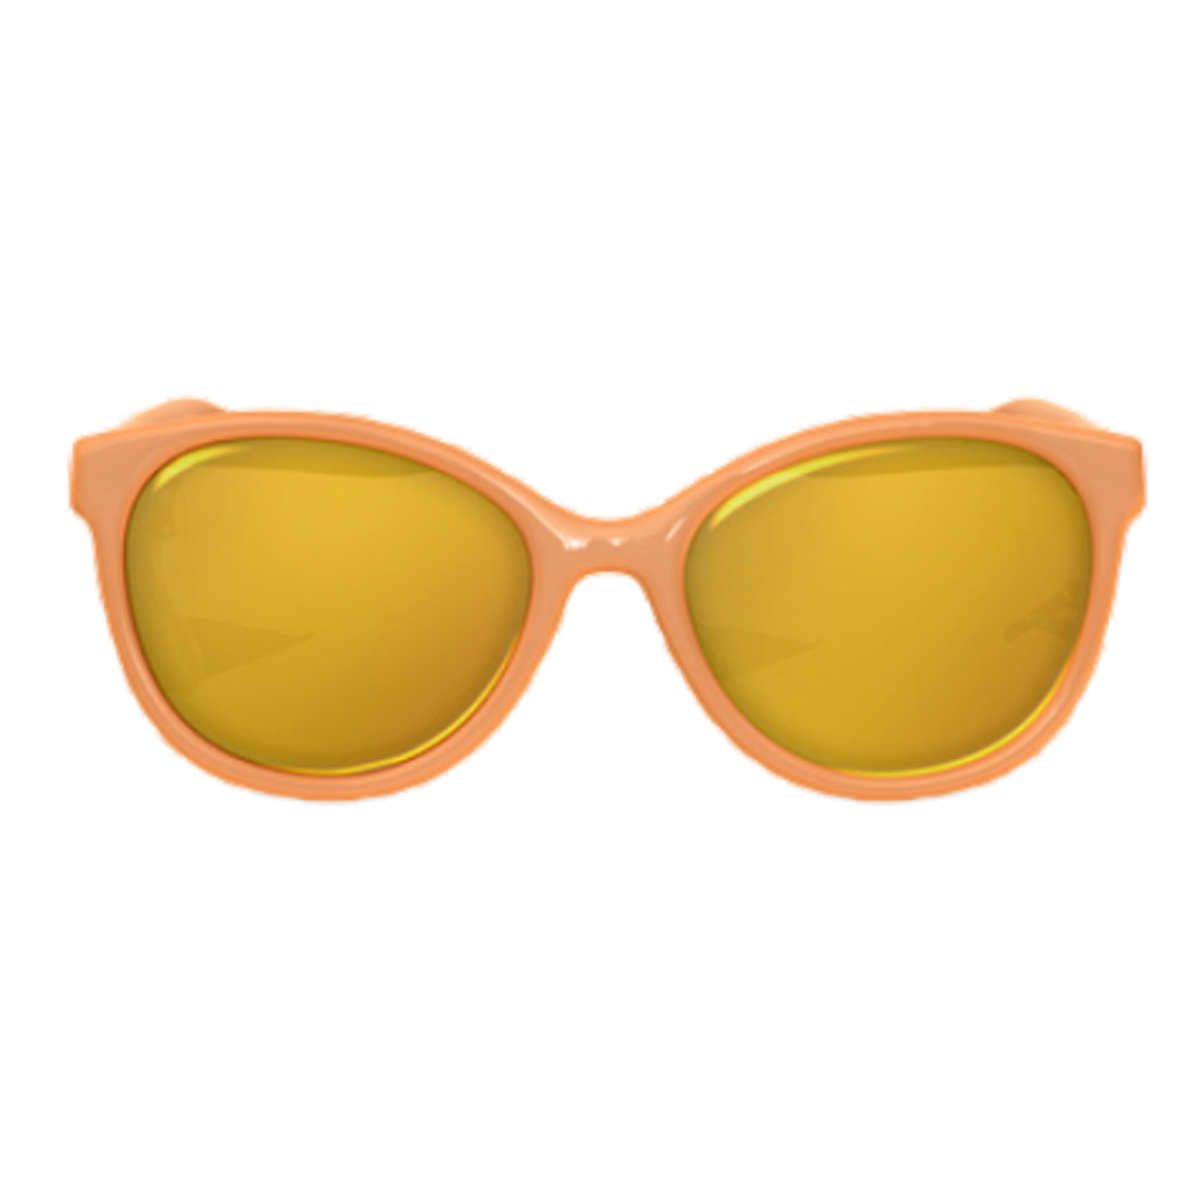 Παιδικά γυαλιά ηλίου Butterfly orange 36m+ suavinex